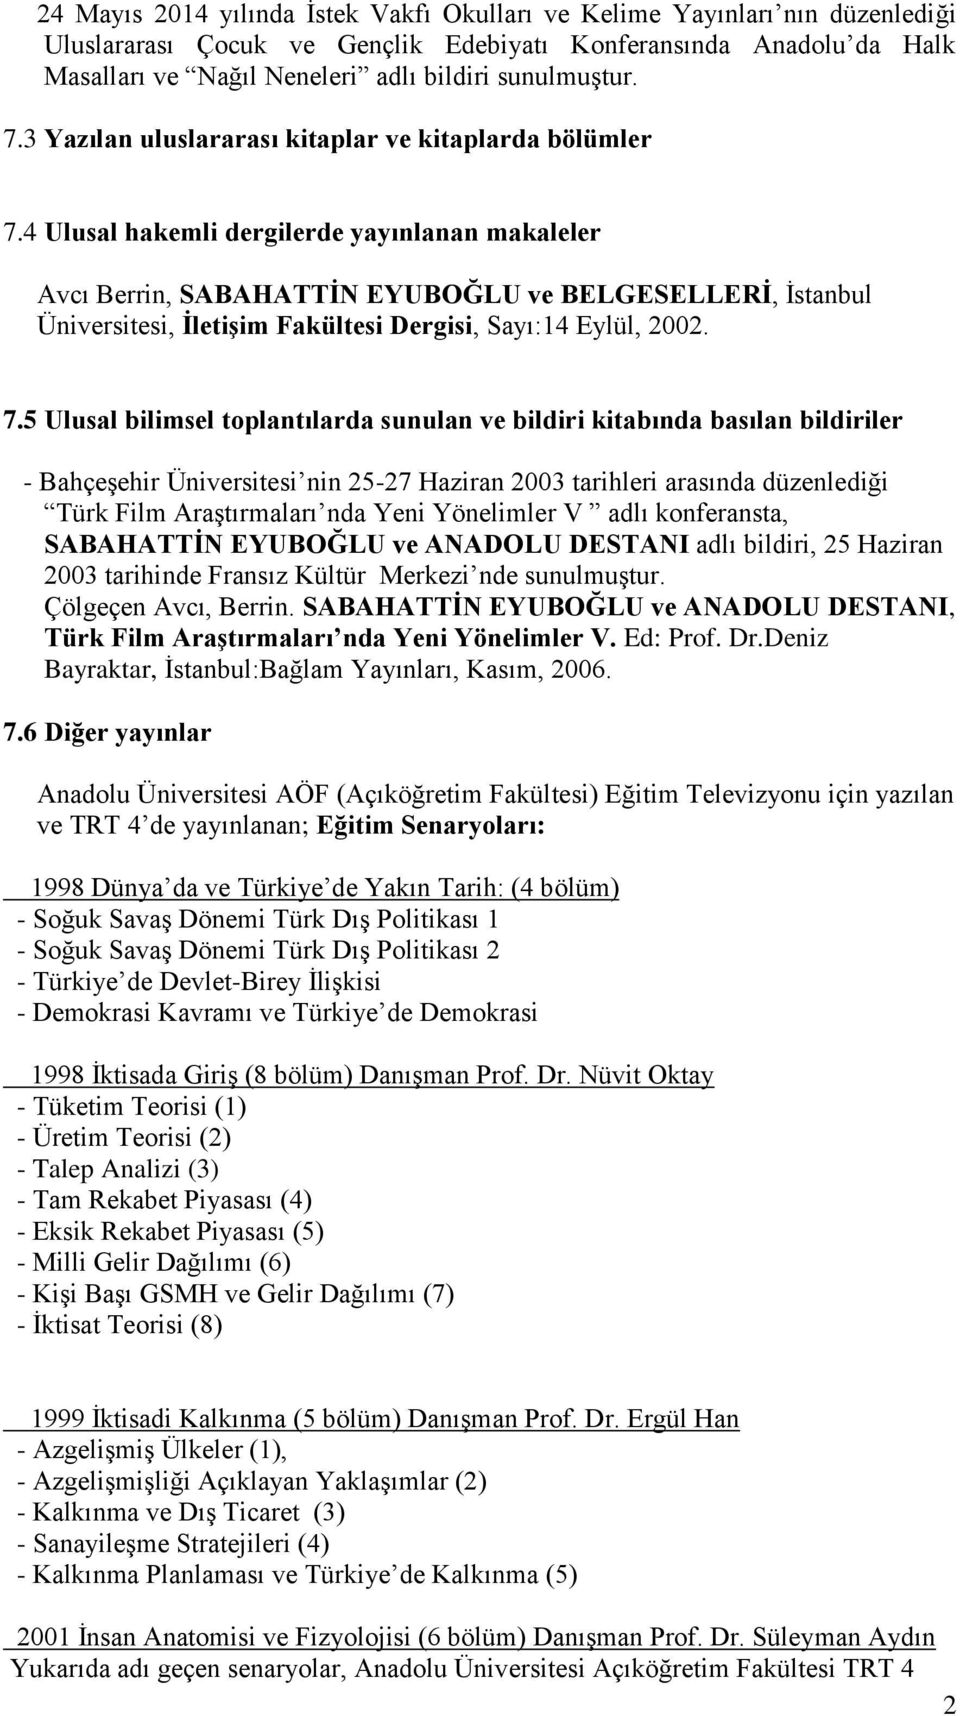 4 Ulusal hakemli dergilerde yayınlanan makaleler Avcı Berrin, SABAHATTİN EYUBOĞLU ve BELGESELLERİ, İstanbul Üniversitesi, İletişim Fakültesi Dergisi, Sayı:14 Eylül, 2002. 7.